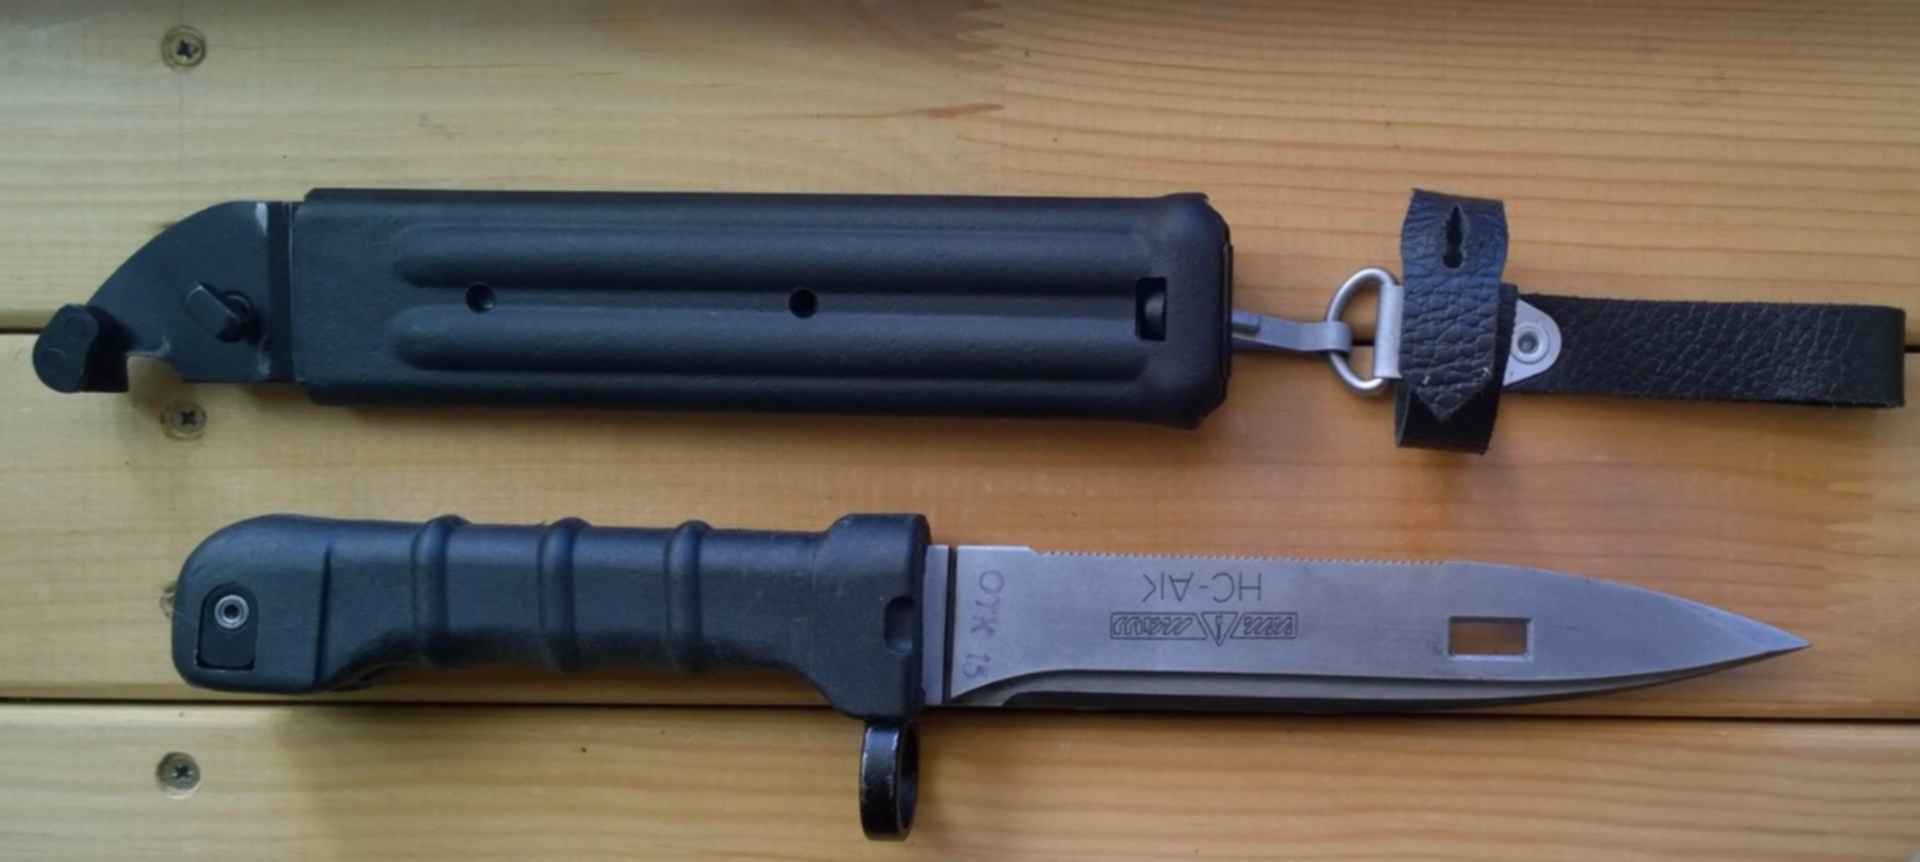 Штык нож АК 103